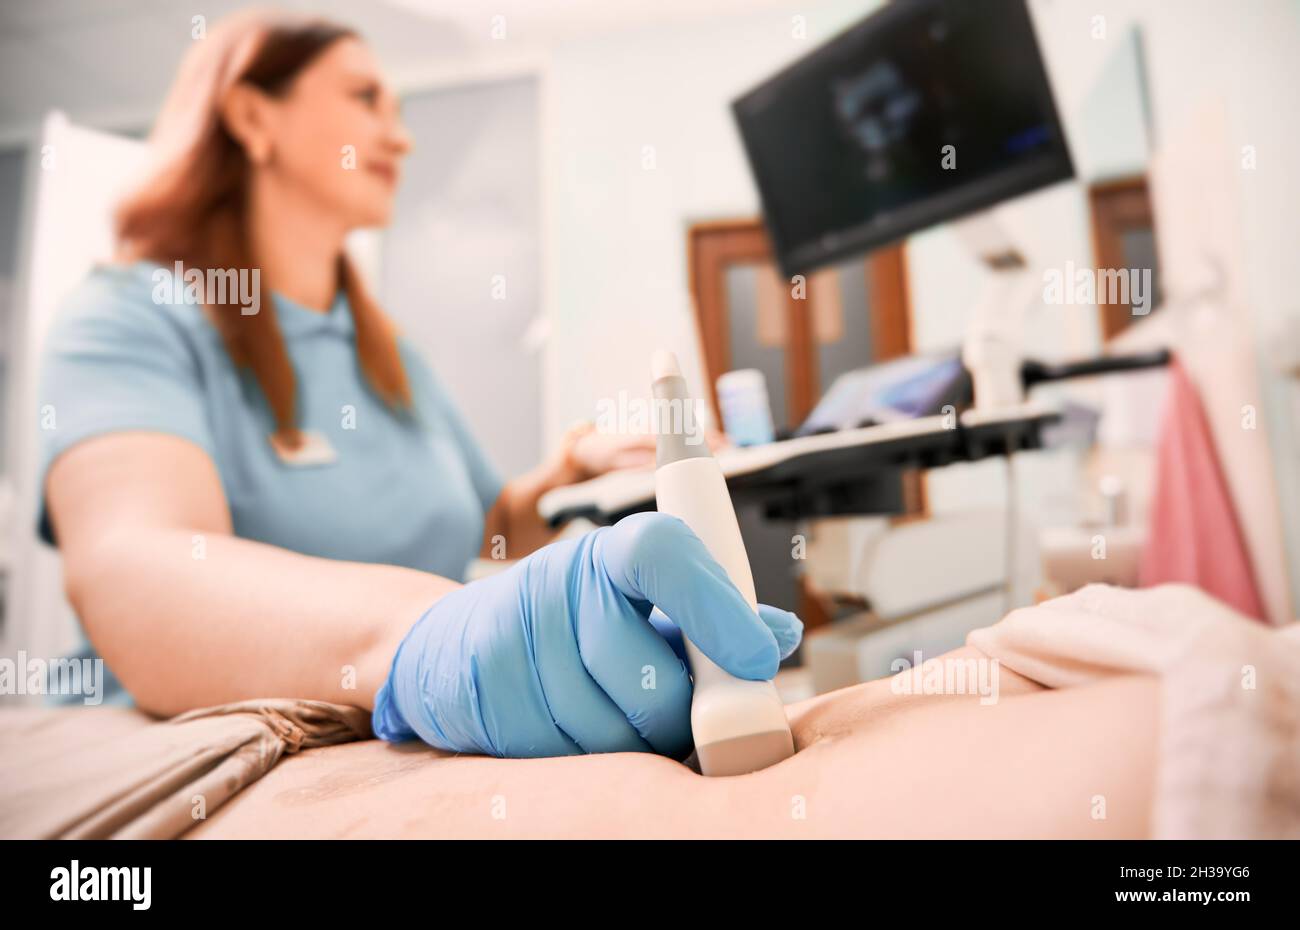 Concentratevi sulla mano del sonografo in guanto sterile che esamina la donna con scanner a ultrasuoni. Medico di sesso femminile che sposta il trasduttore sull'addome del paziente guardando il display. Concetto di diagnostica a ultrasuoni. Foto Stock